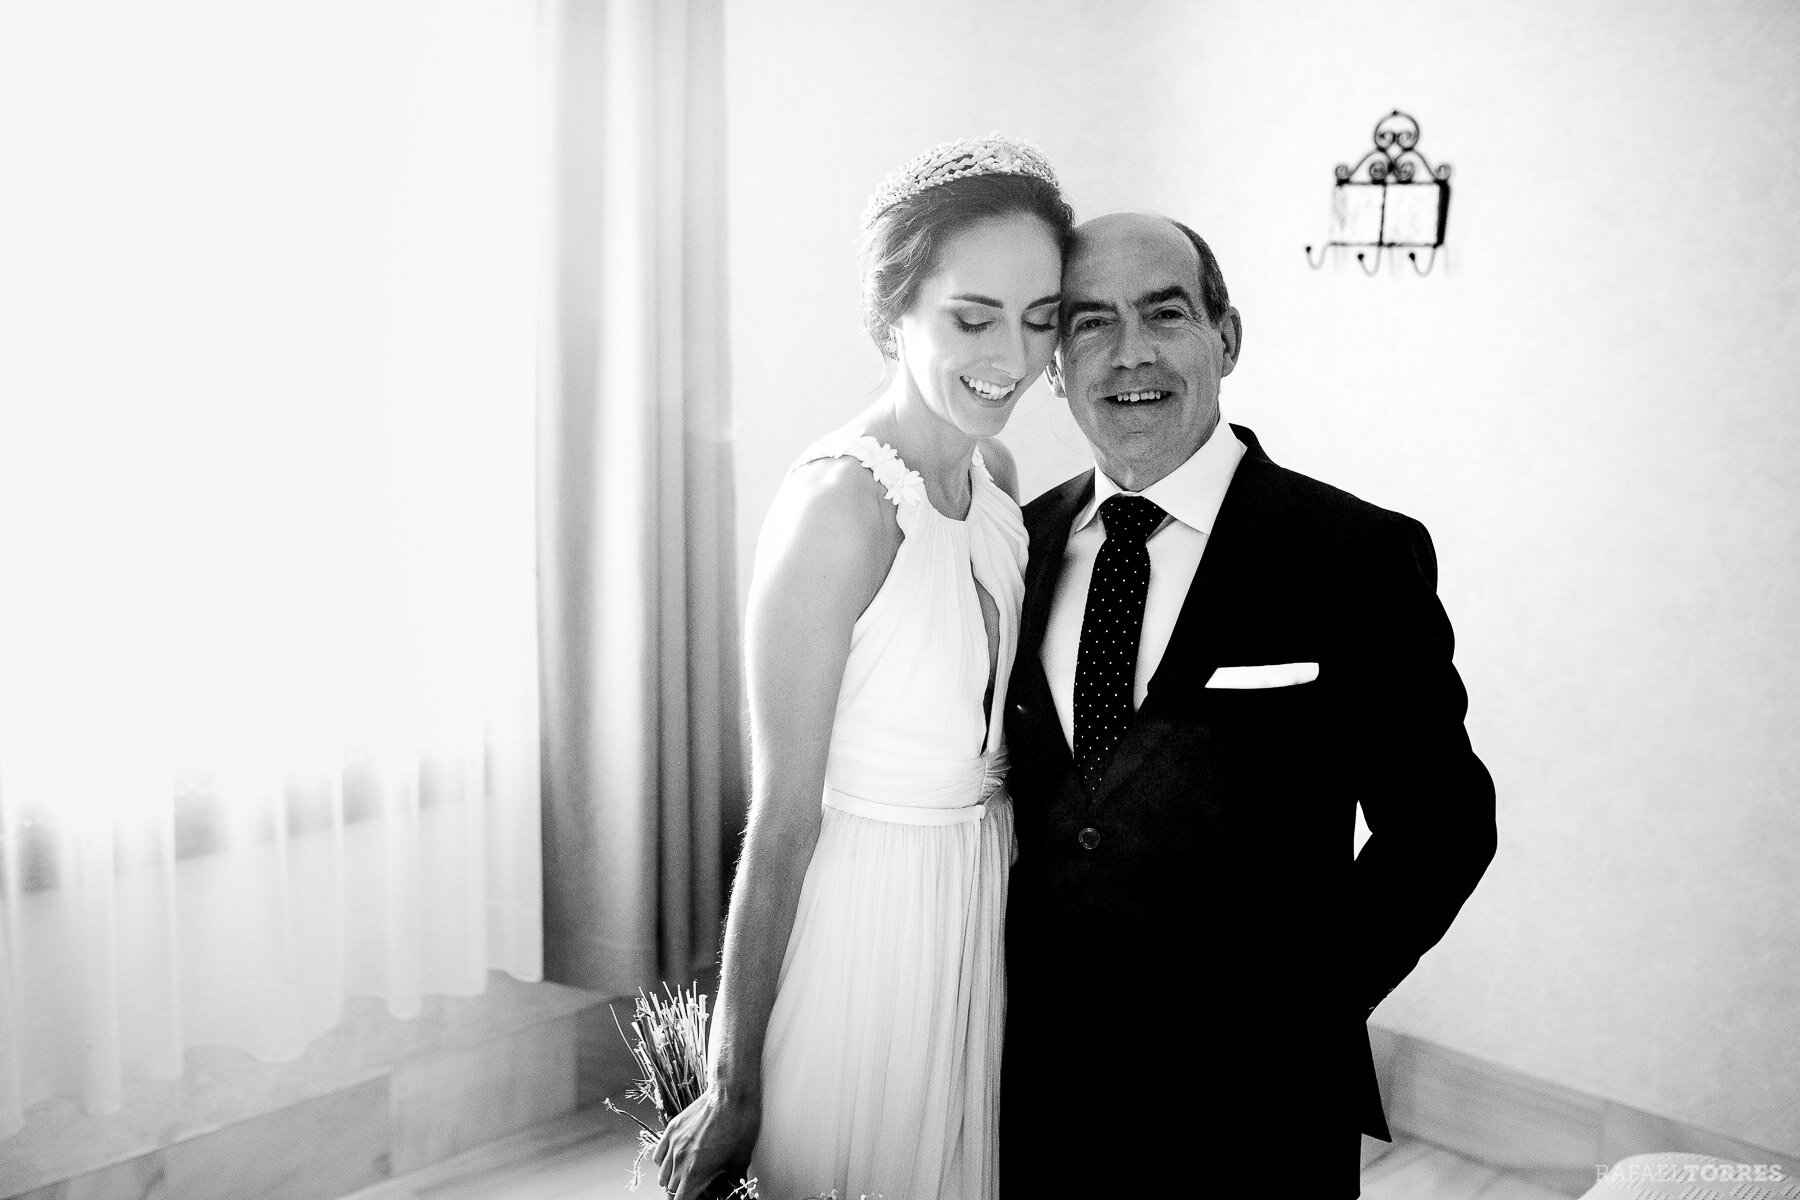 photo-principe-cortegana-rafael-torres-wedding-boda-fotografia-catering-campuzano-37.jpg